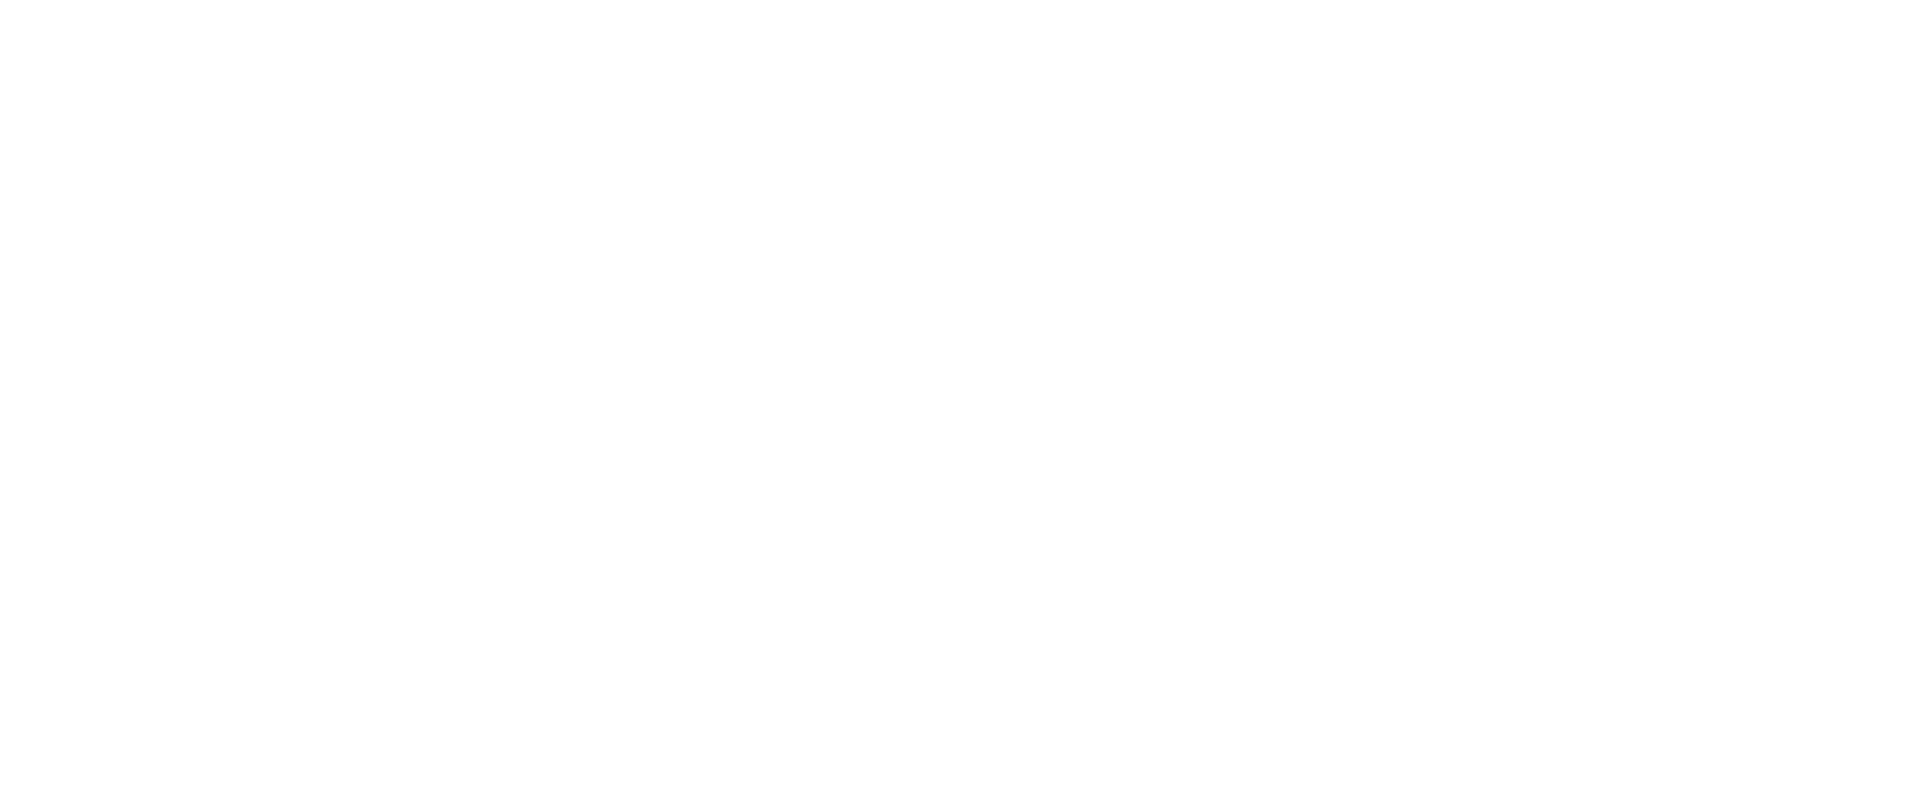 HorrorCon Germany 